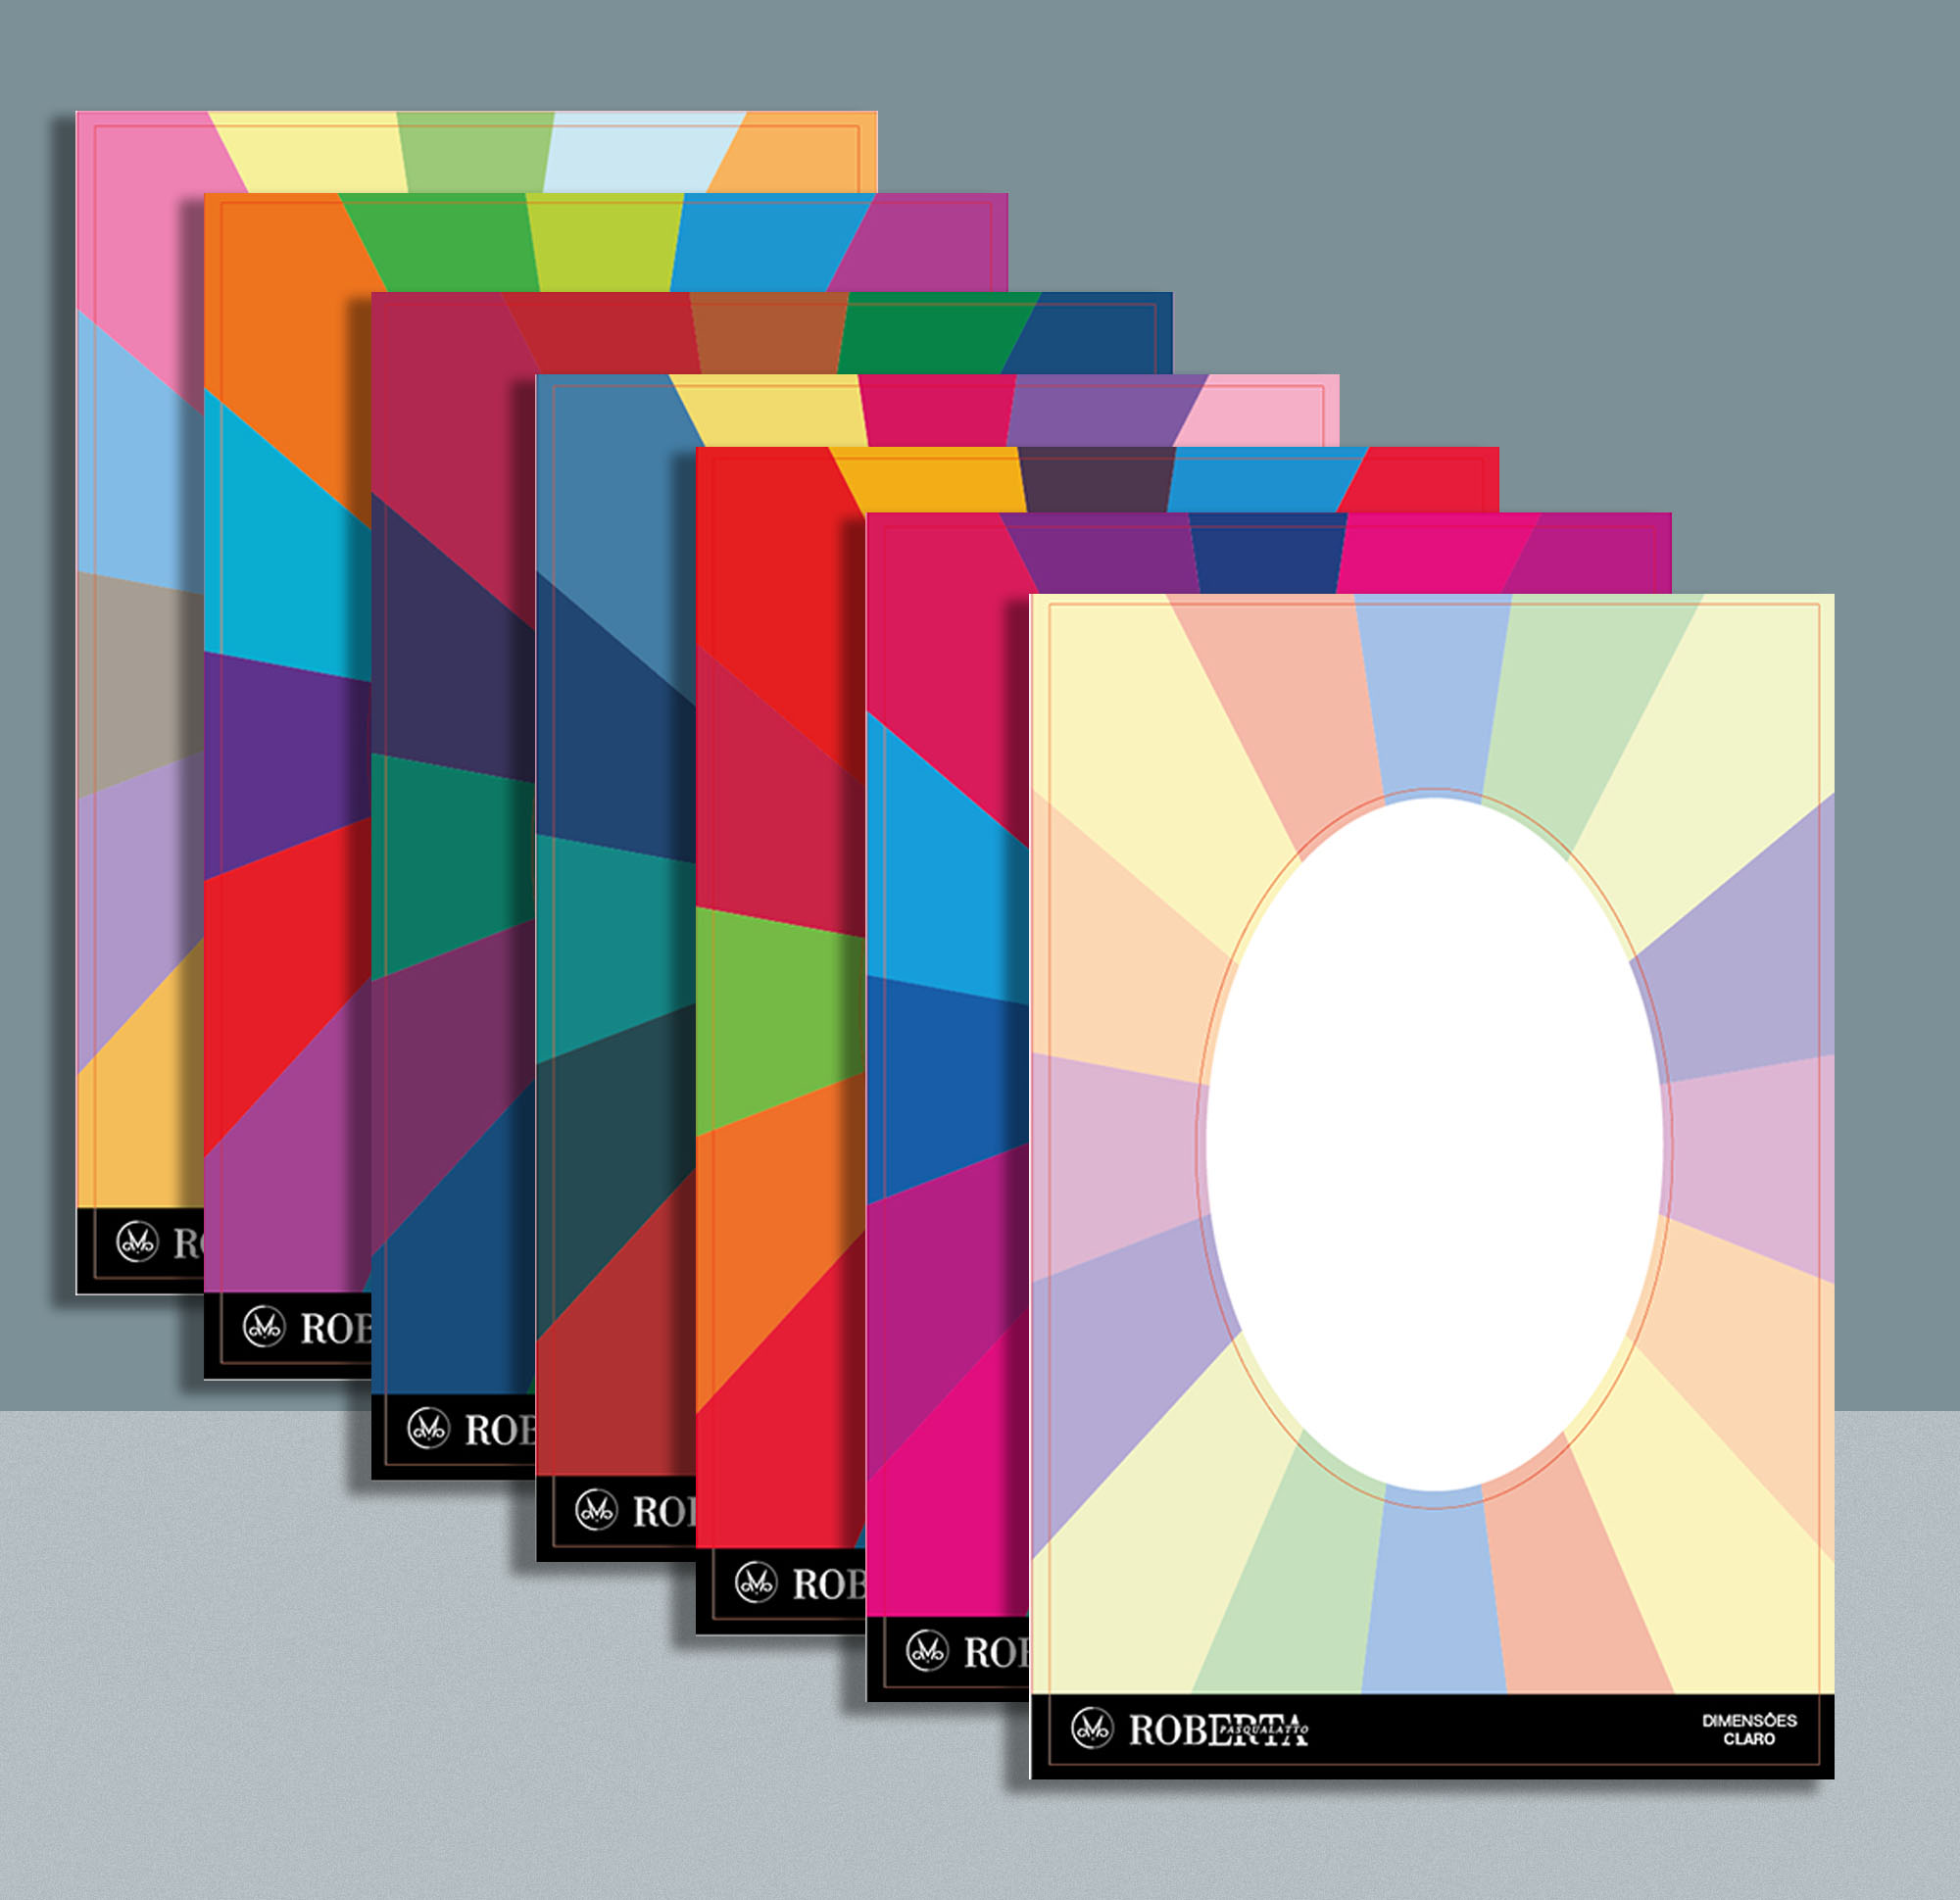 Cards de coloração (Cartela cores) método sazonal expandido by Roberta Pasqualato